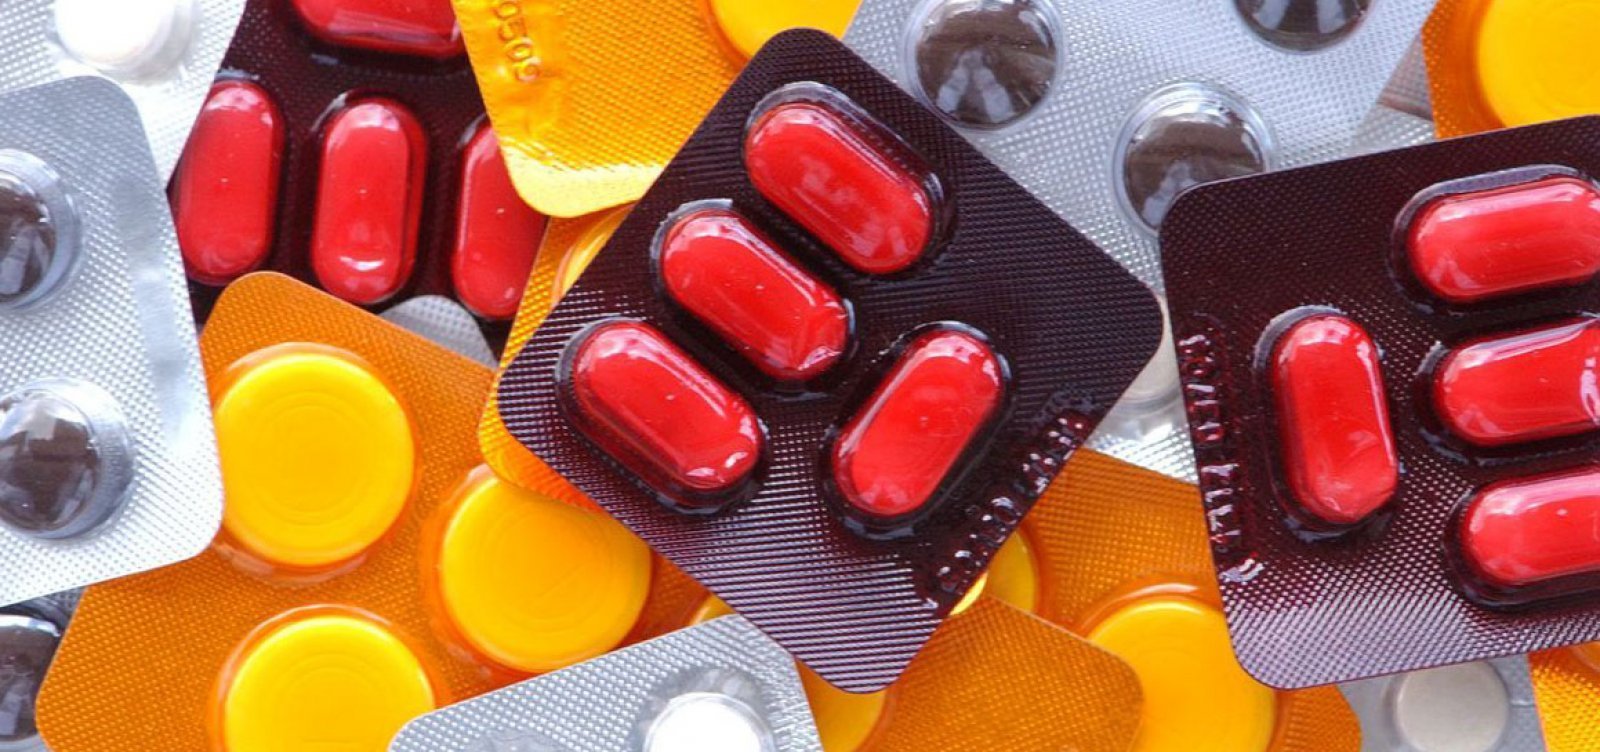 Governo autoriza reajuste de quase 11% no preço de medicamentos